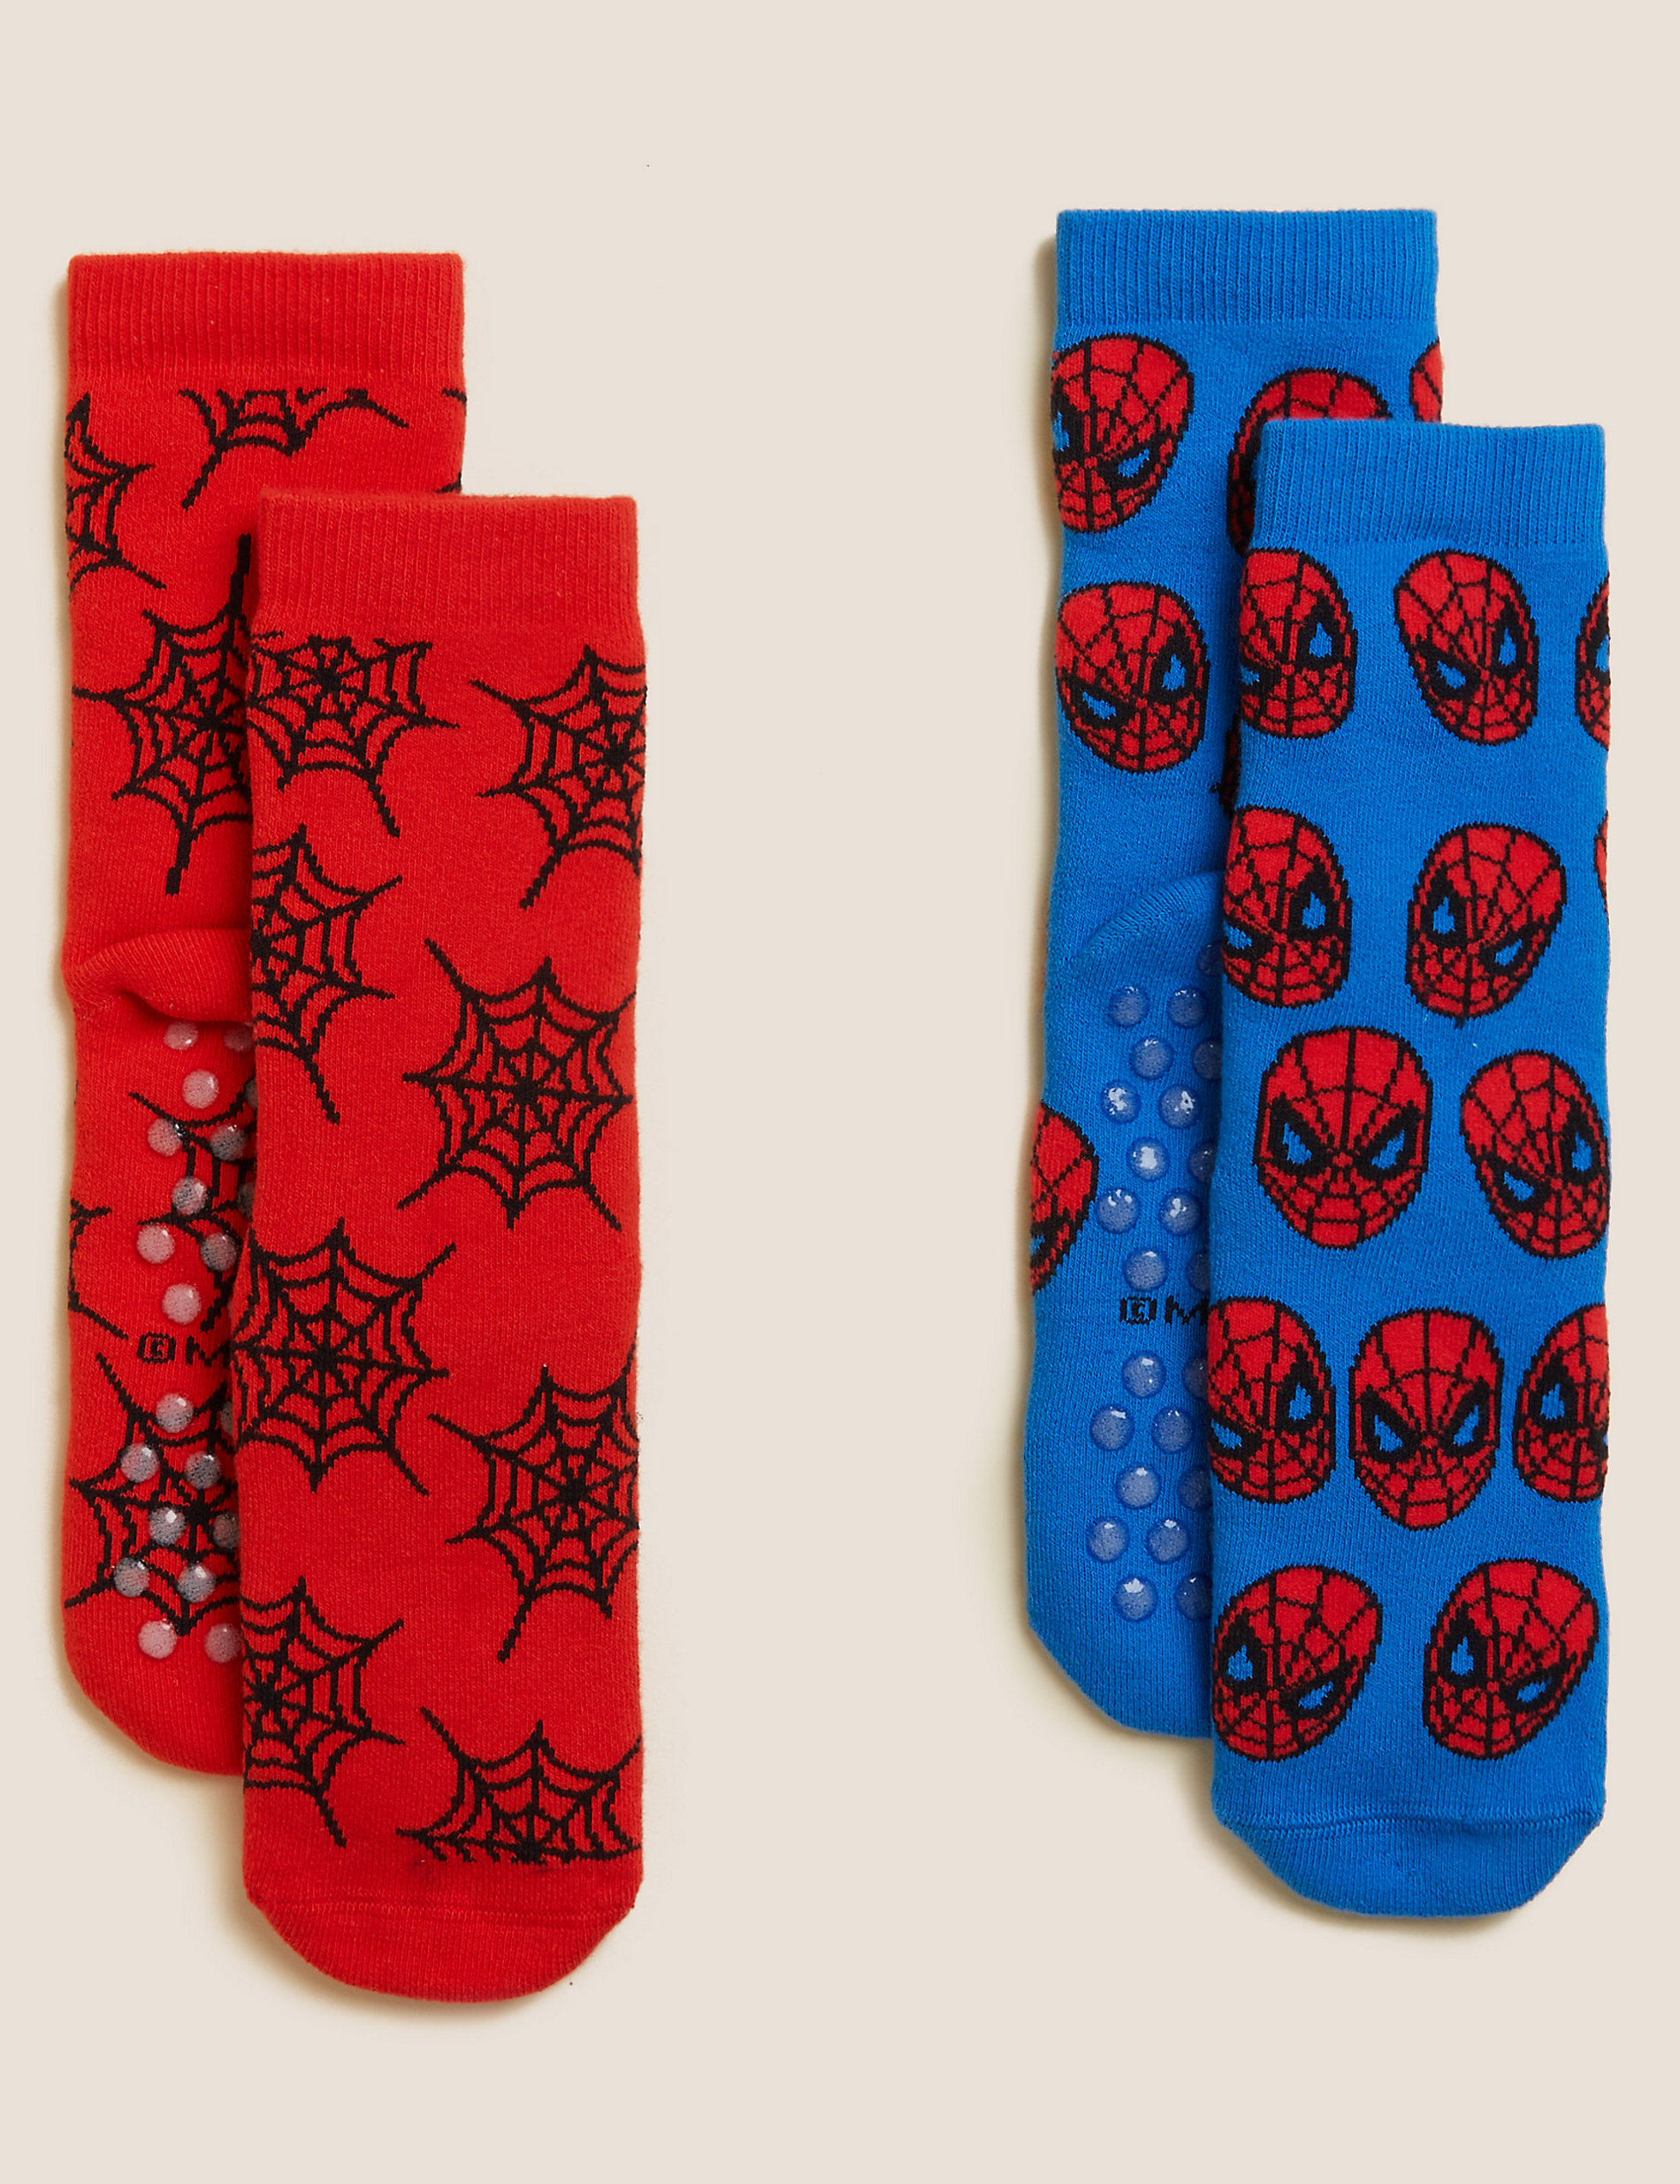 2pk Spider-Man™ Cosy Socks